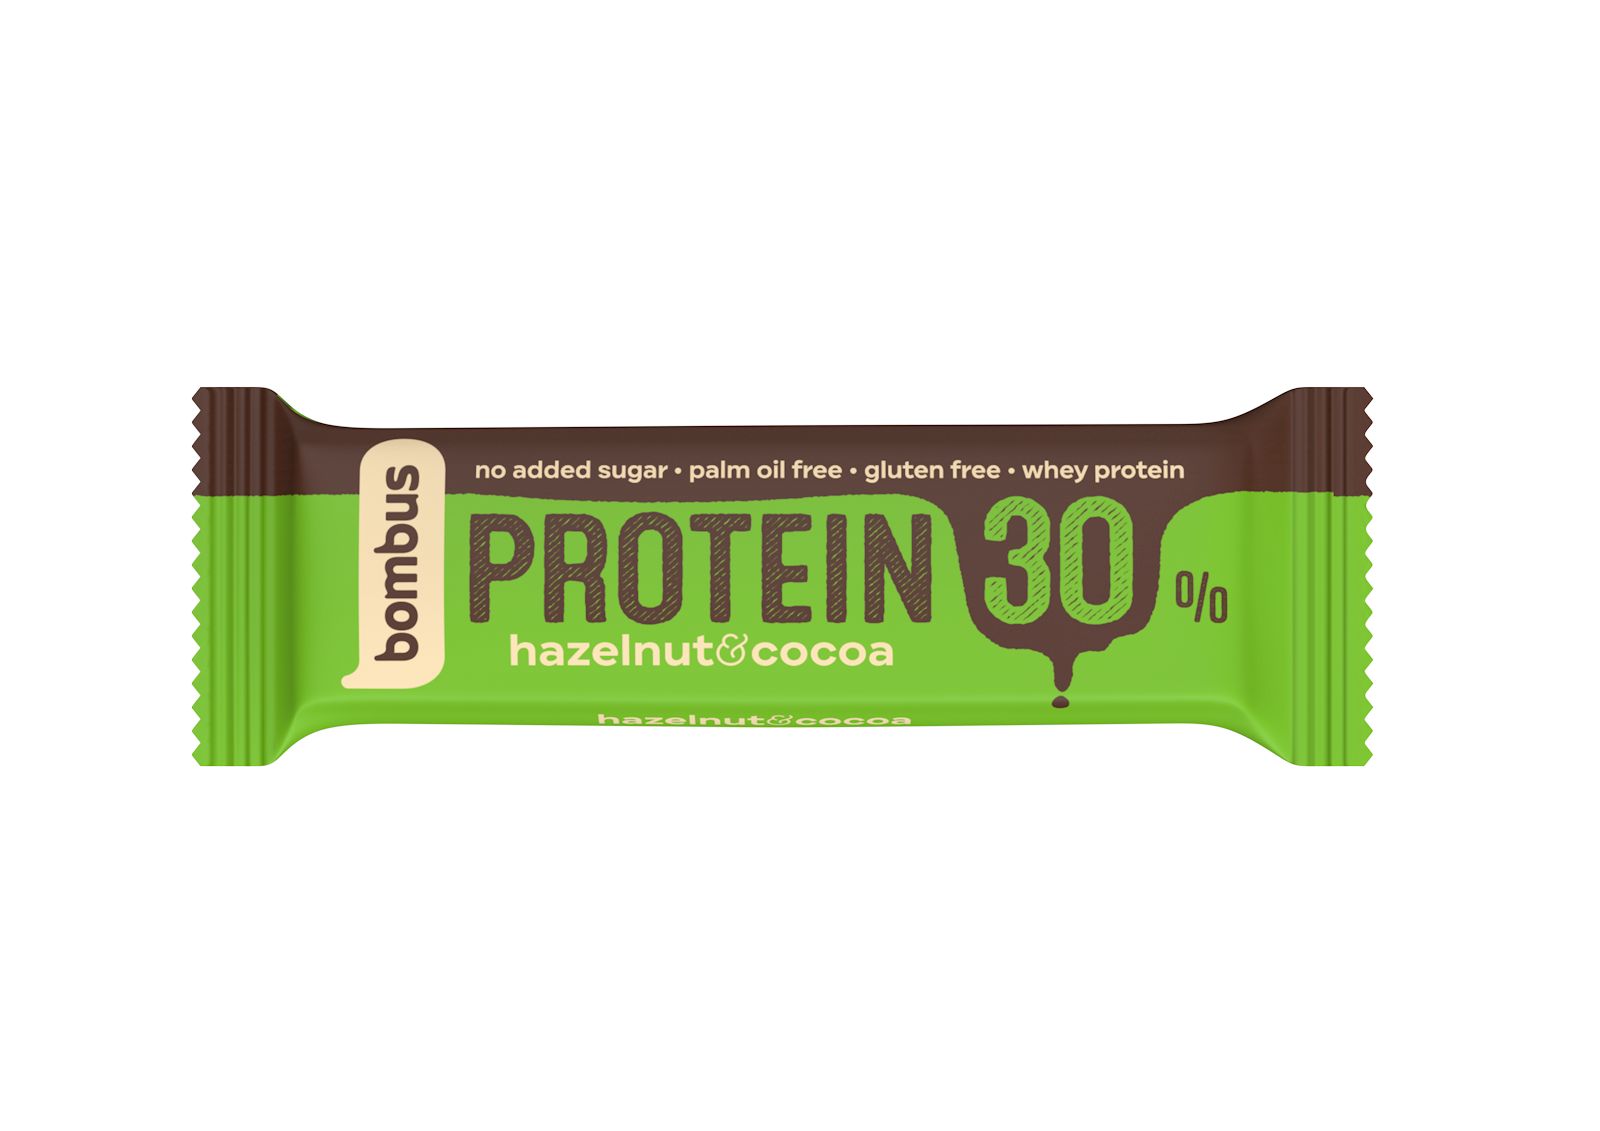 Bombus Protein 30% Hazelnut & cocoa tyčinka 50 g Bombus